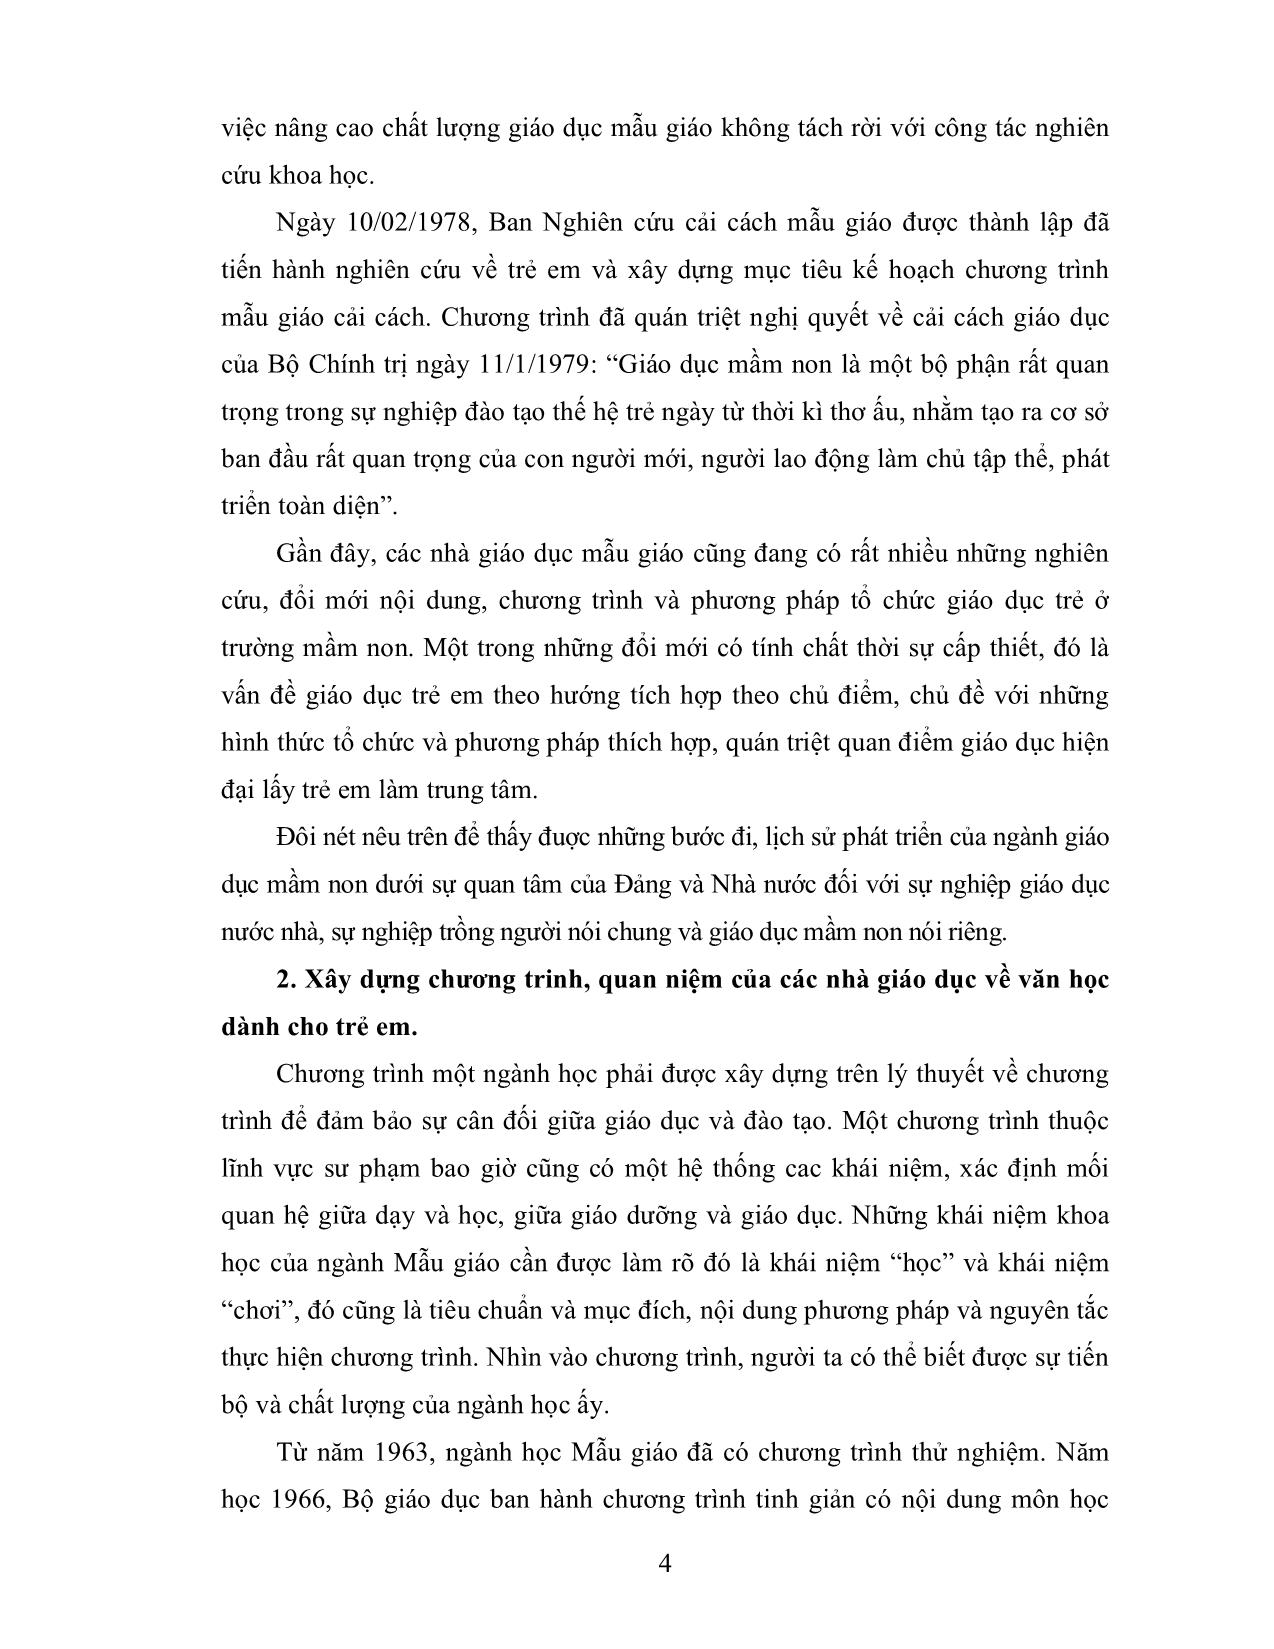 Giáo trình Phương pháp cho trẻ làm quen với tác phẩm văn học (Phần 1) trang 4